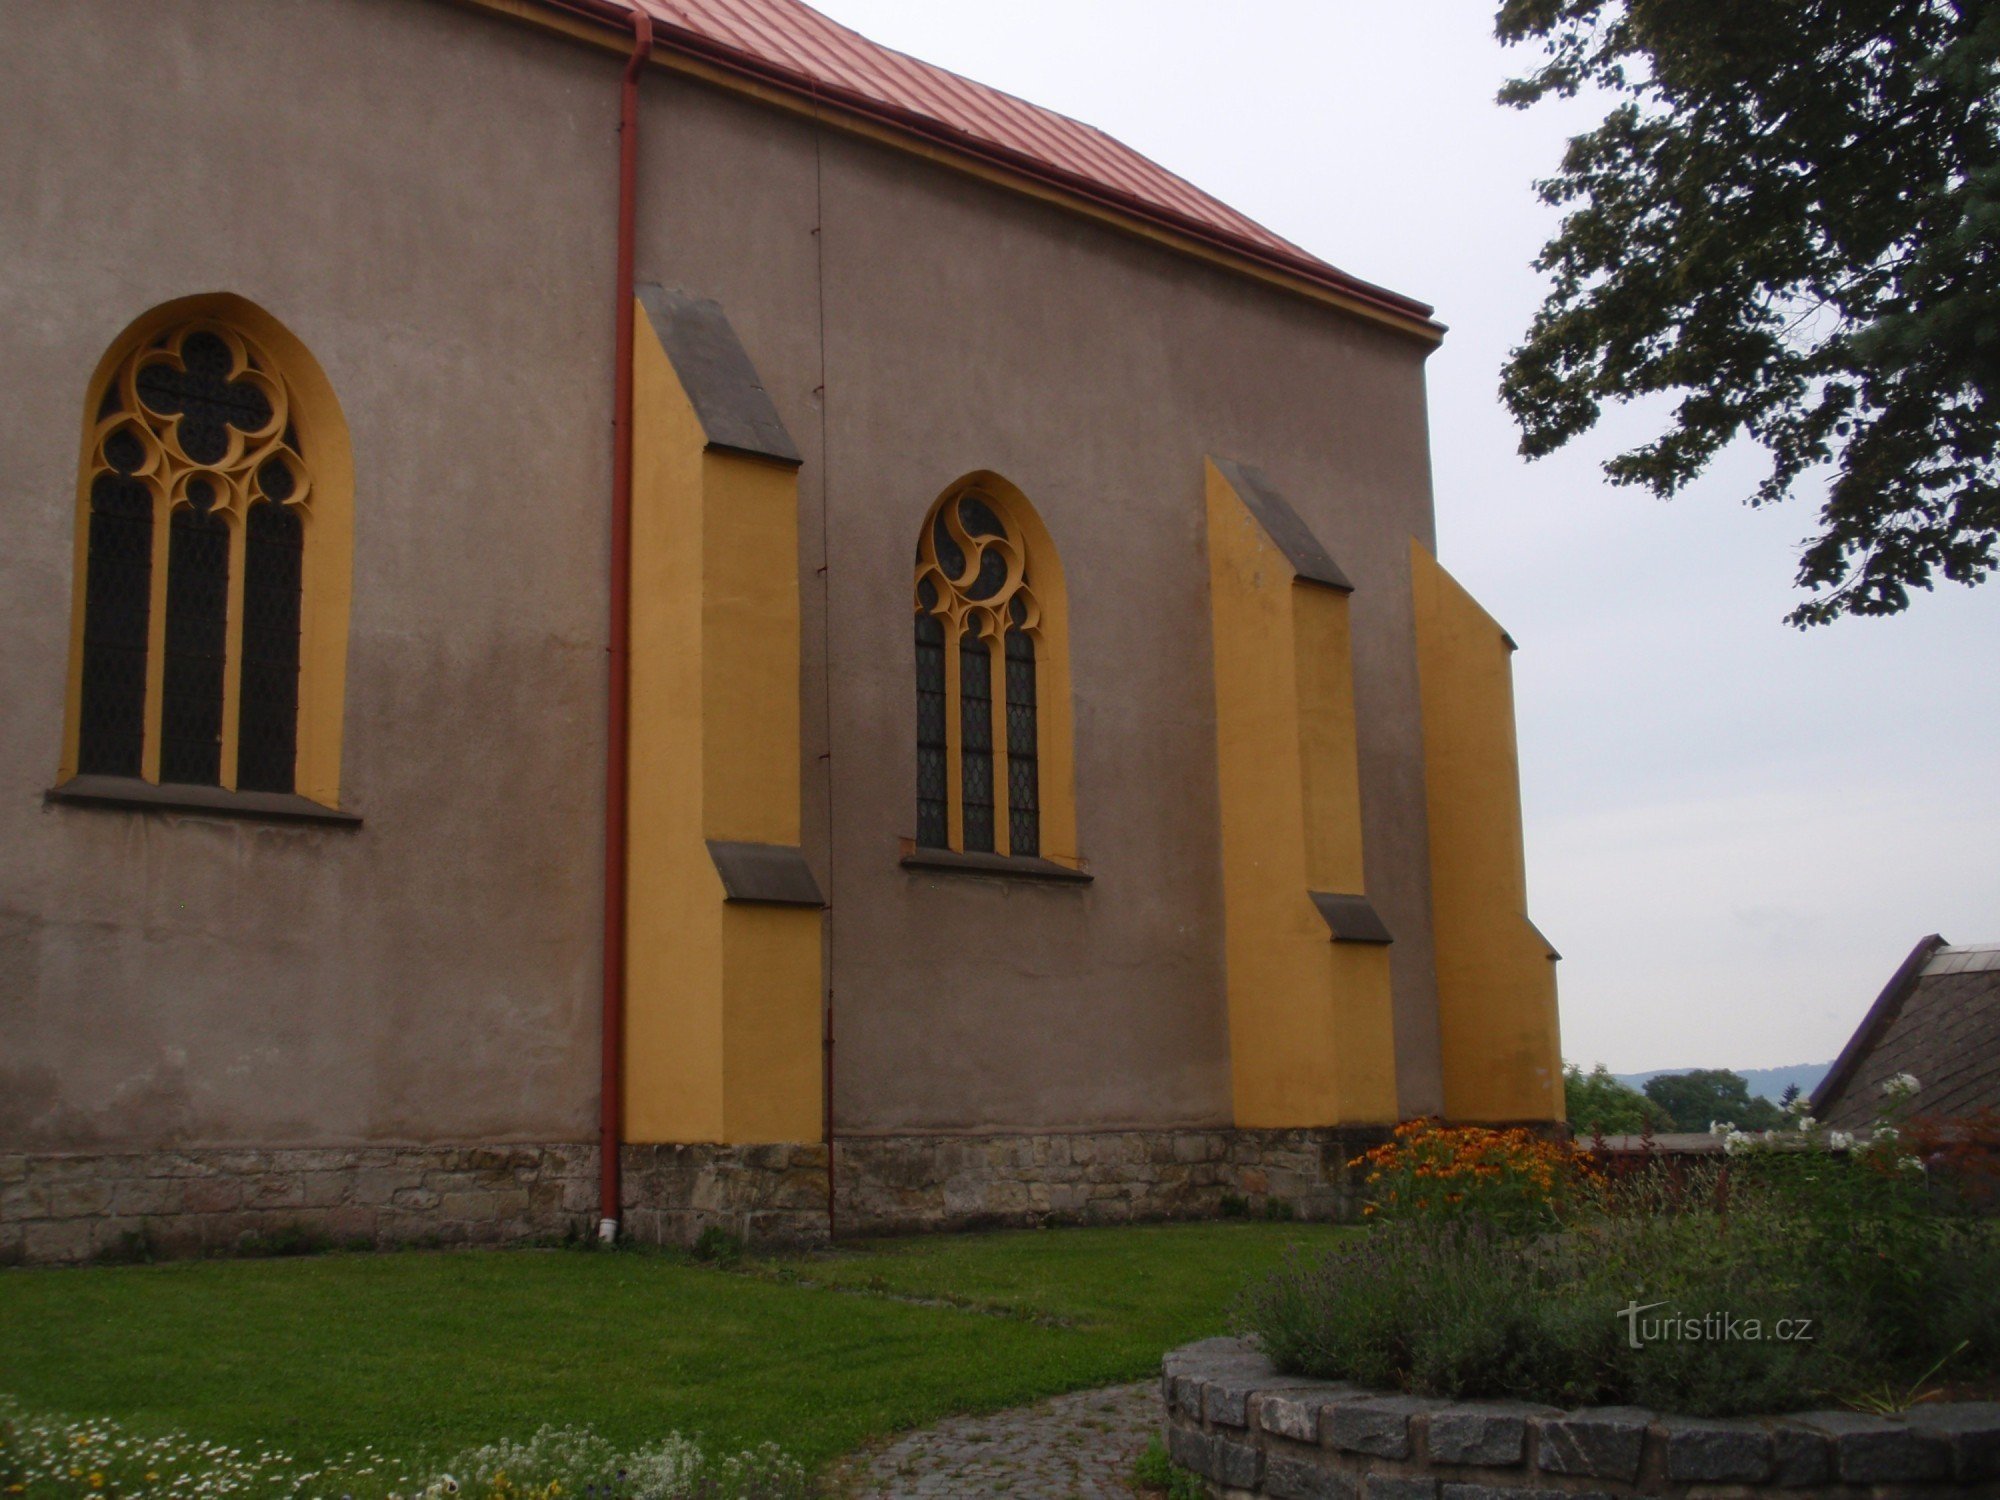 Church monuments of the city of Chotěboře